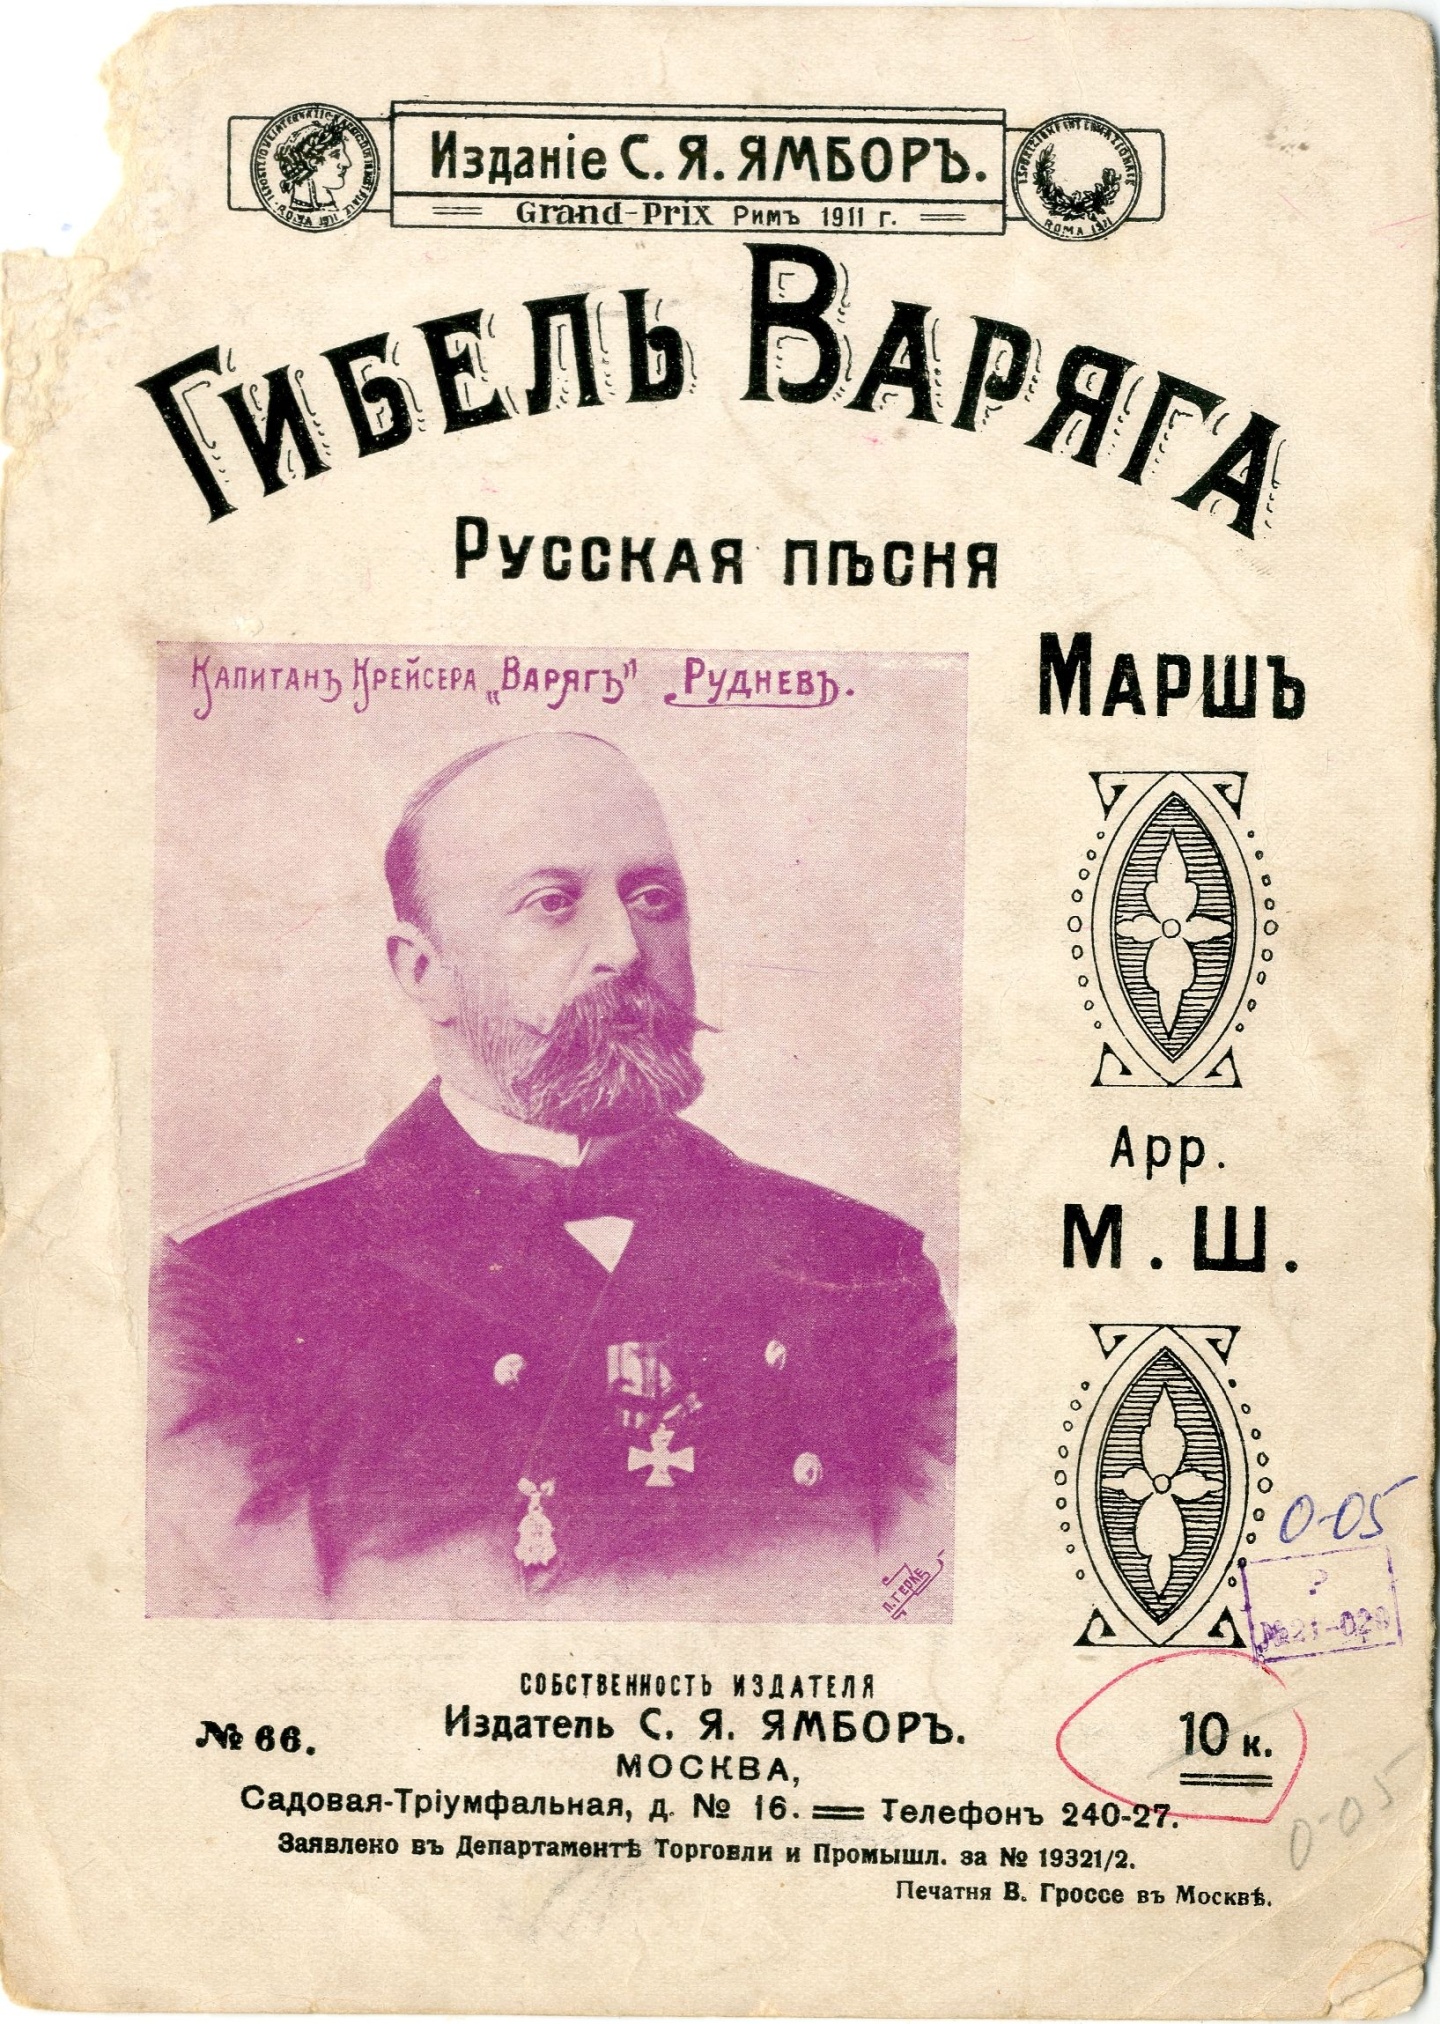 Ноты русской песни «Гибель Варяга». Москва. 1911 год.